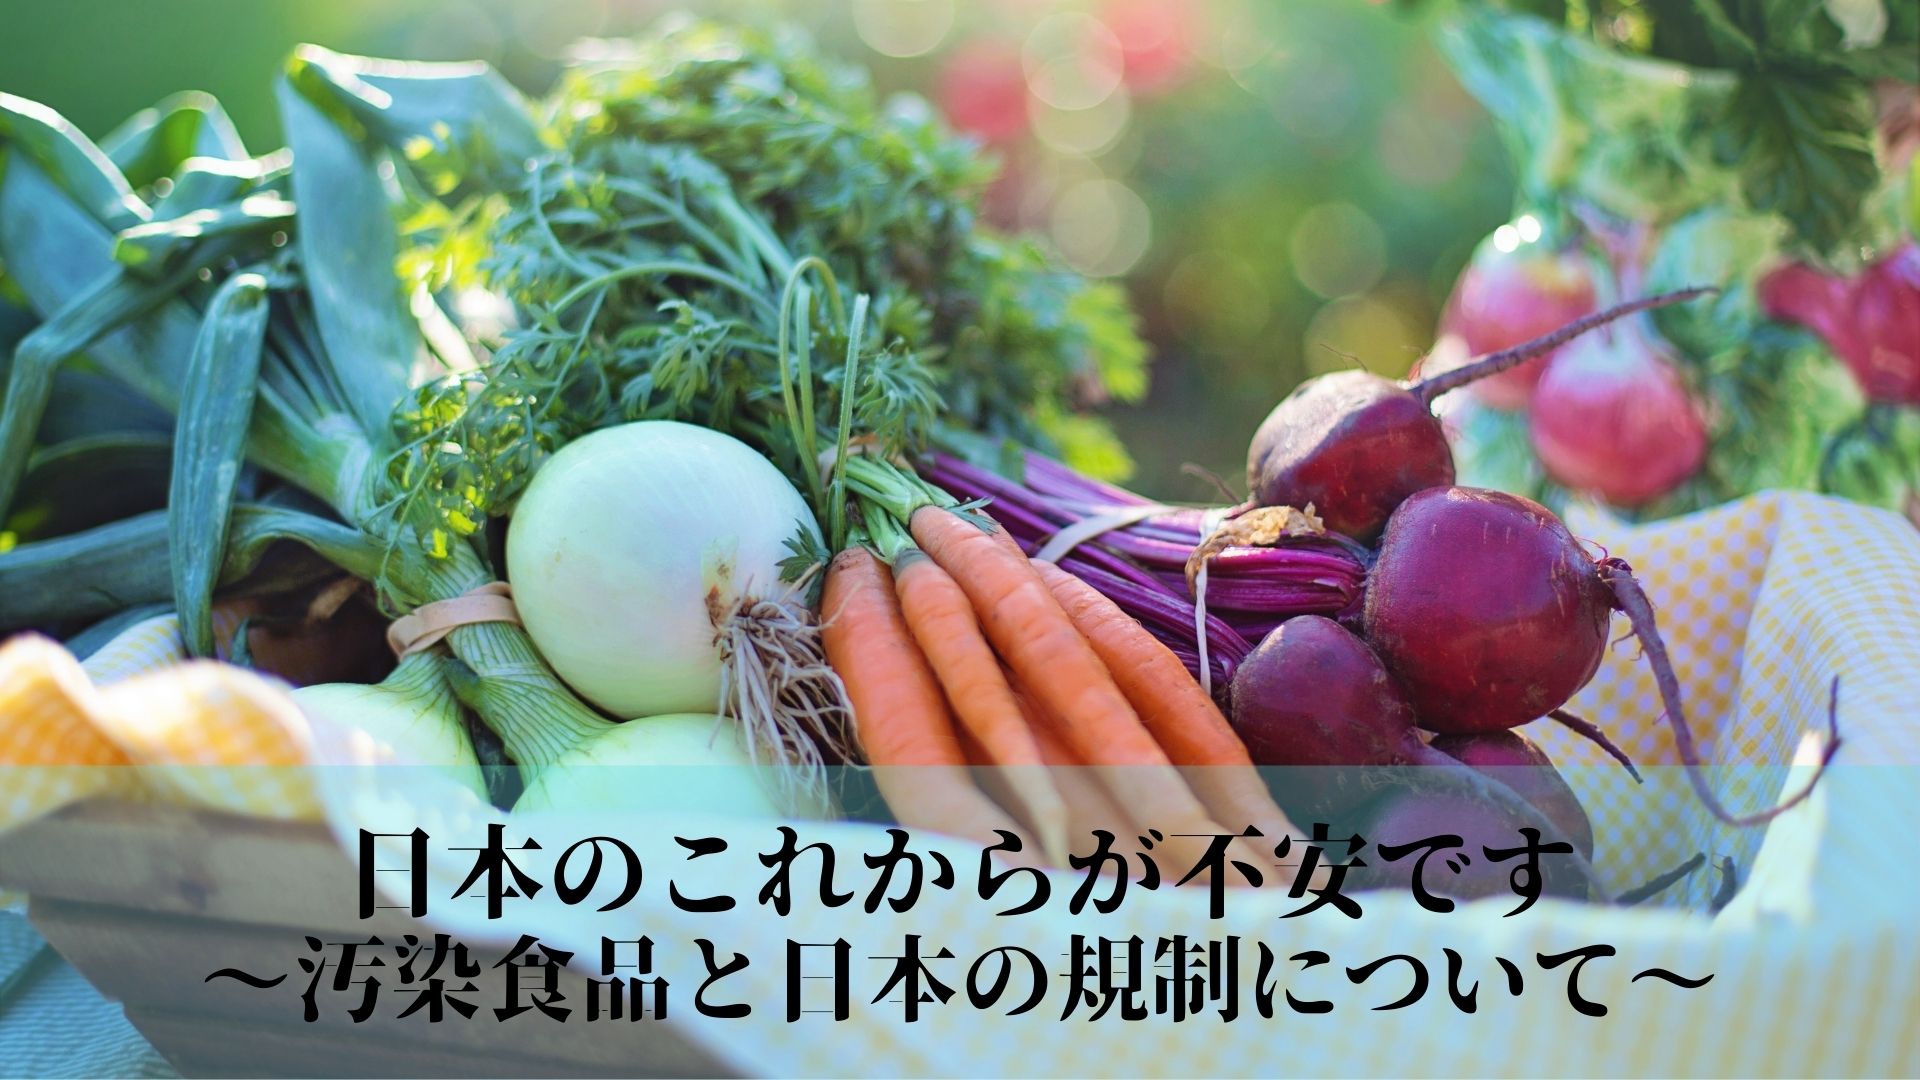 日本のこれからが不安です〜汚染食品と日本の規制について〜